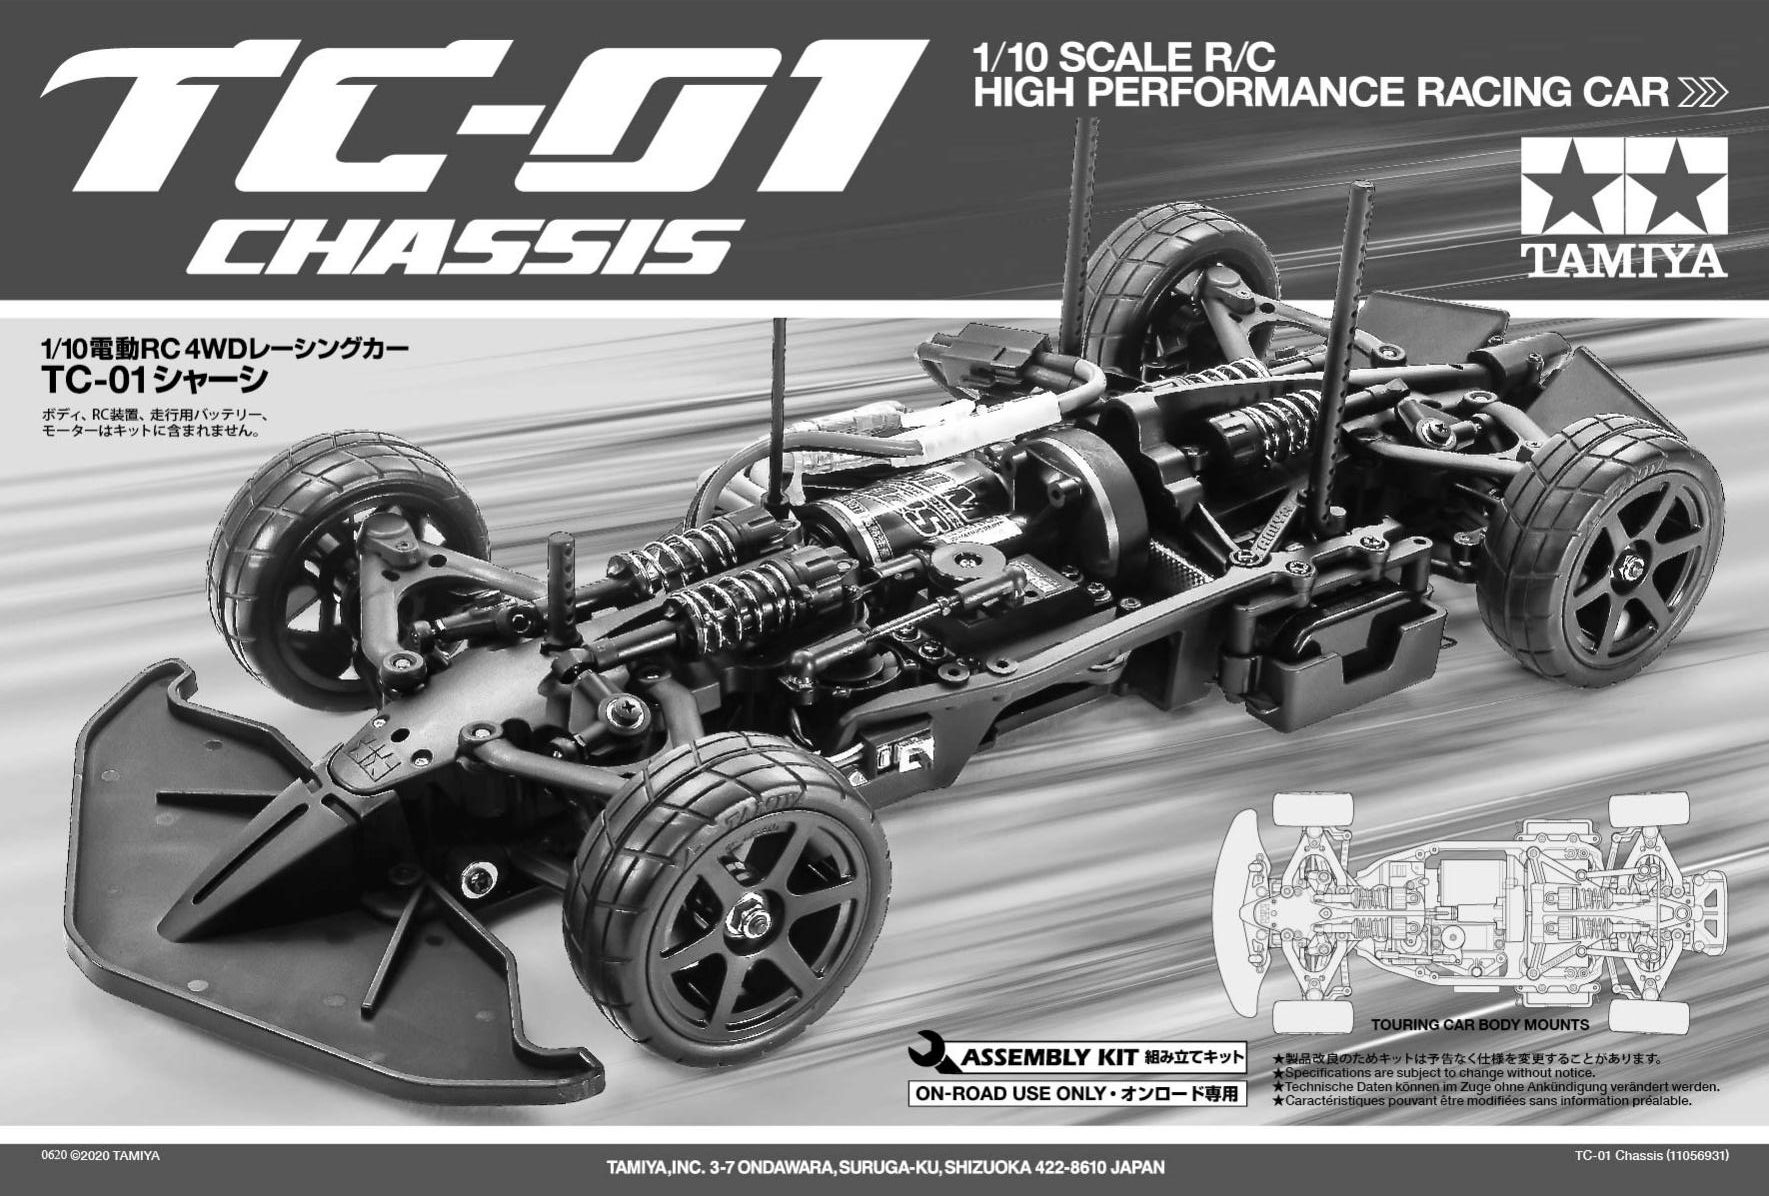 Tamiya Formula E Gen2 Car Championship Livery Tc 01 Chassis Assembly Manual Tamiyablog